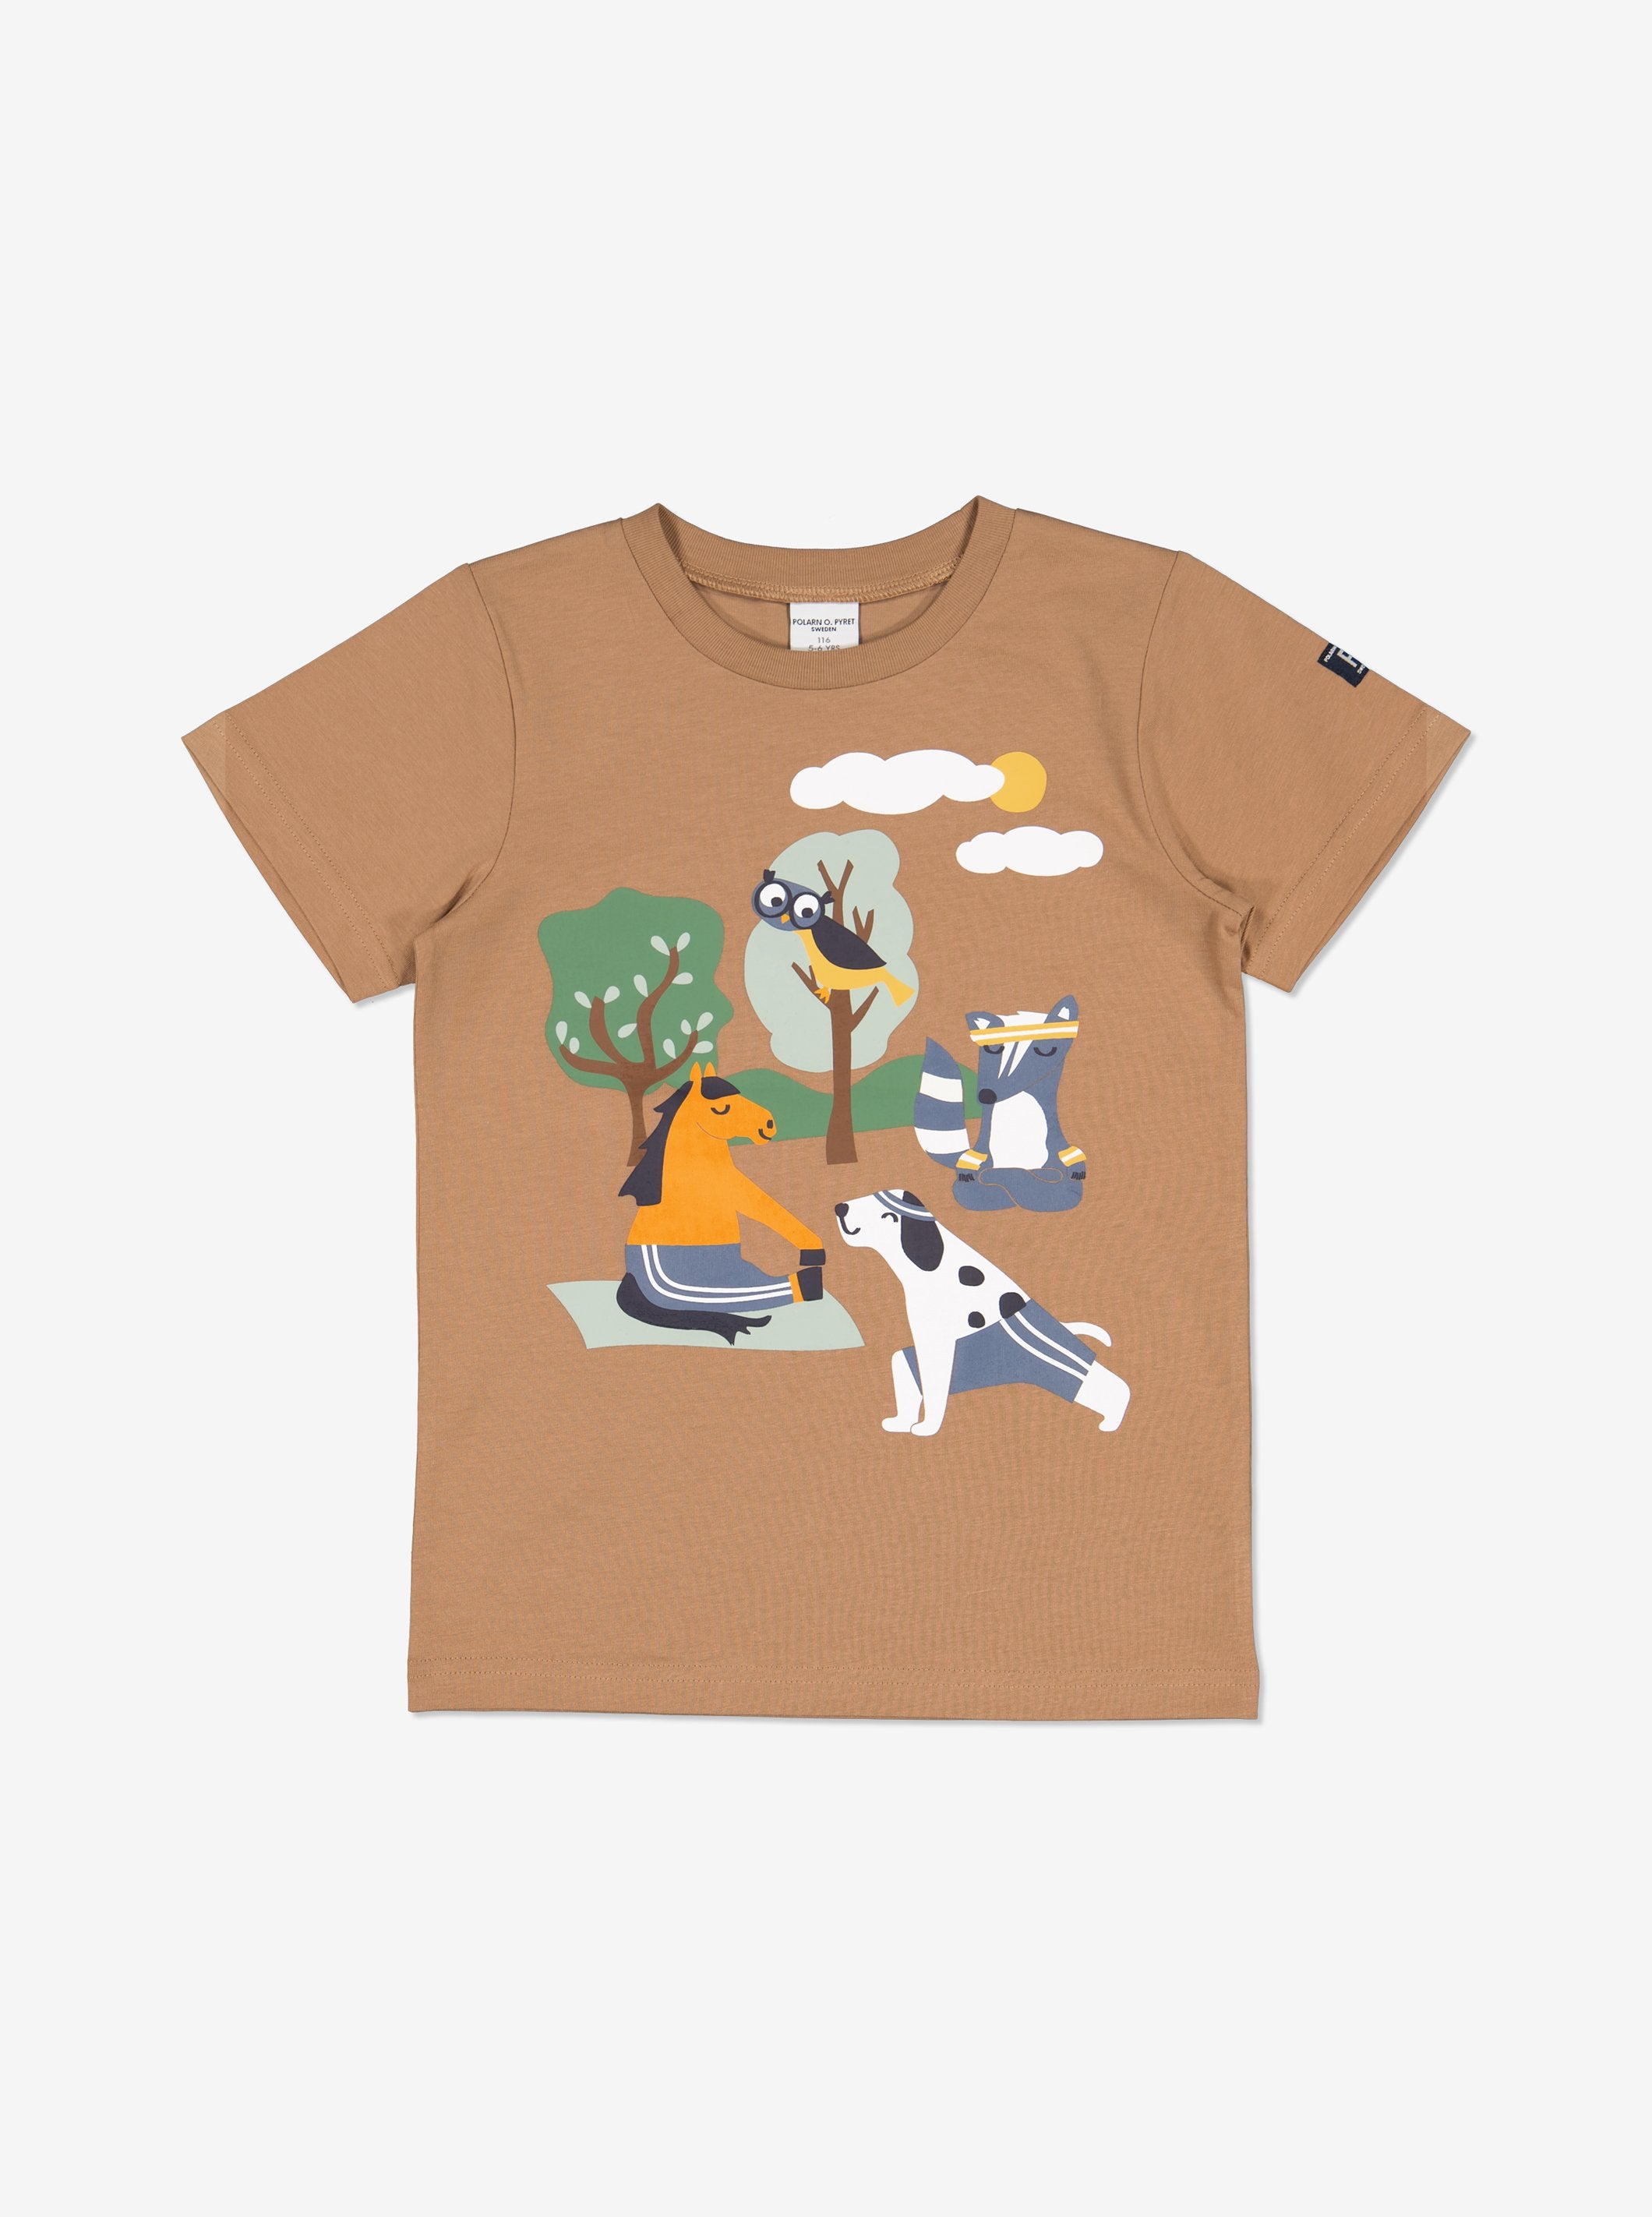 Polarn O. Pyret Animal Print Kids T-Shirt Brown Boys Toddler Age 1-1.5 Years